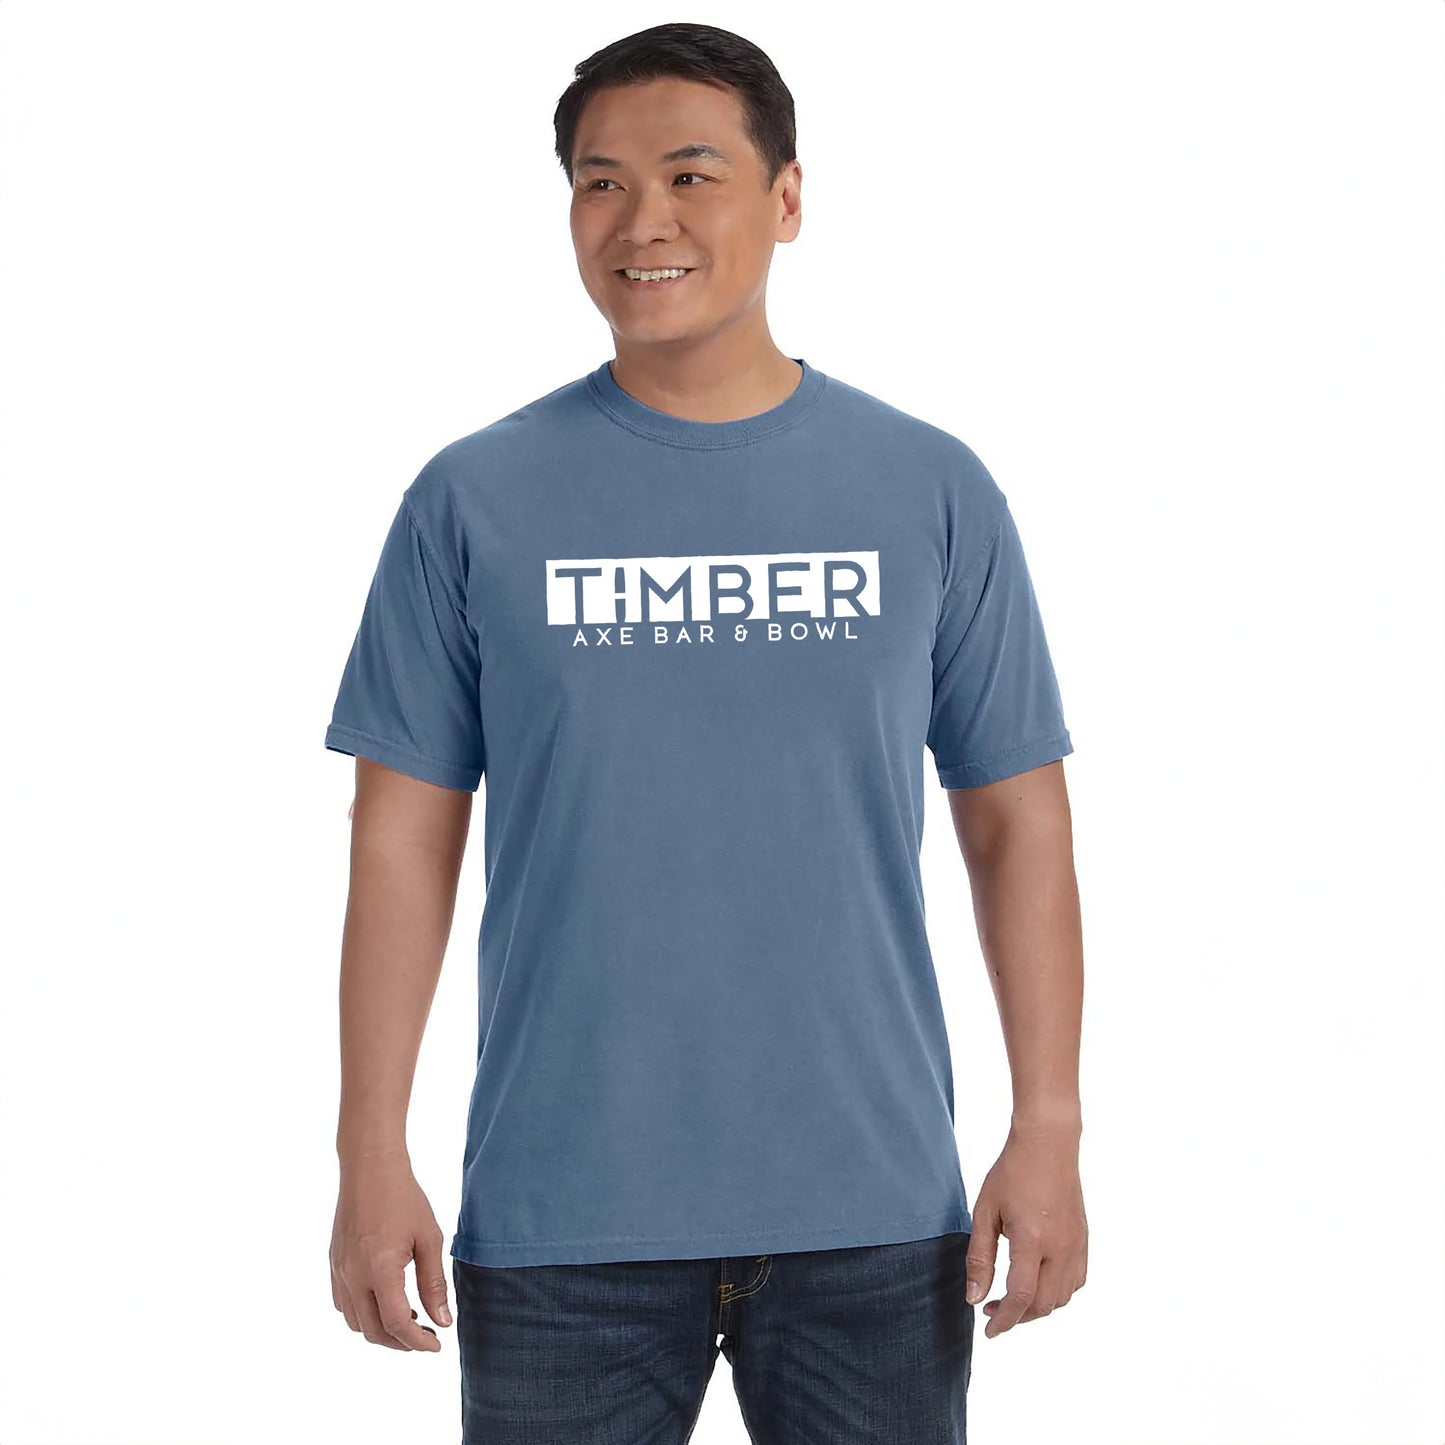 Timber Axe Bar & Bowl T-Shirt